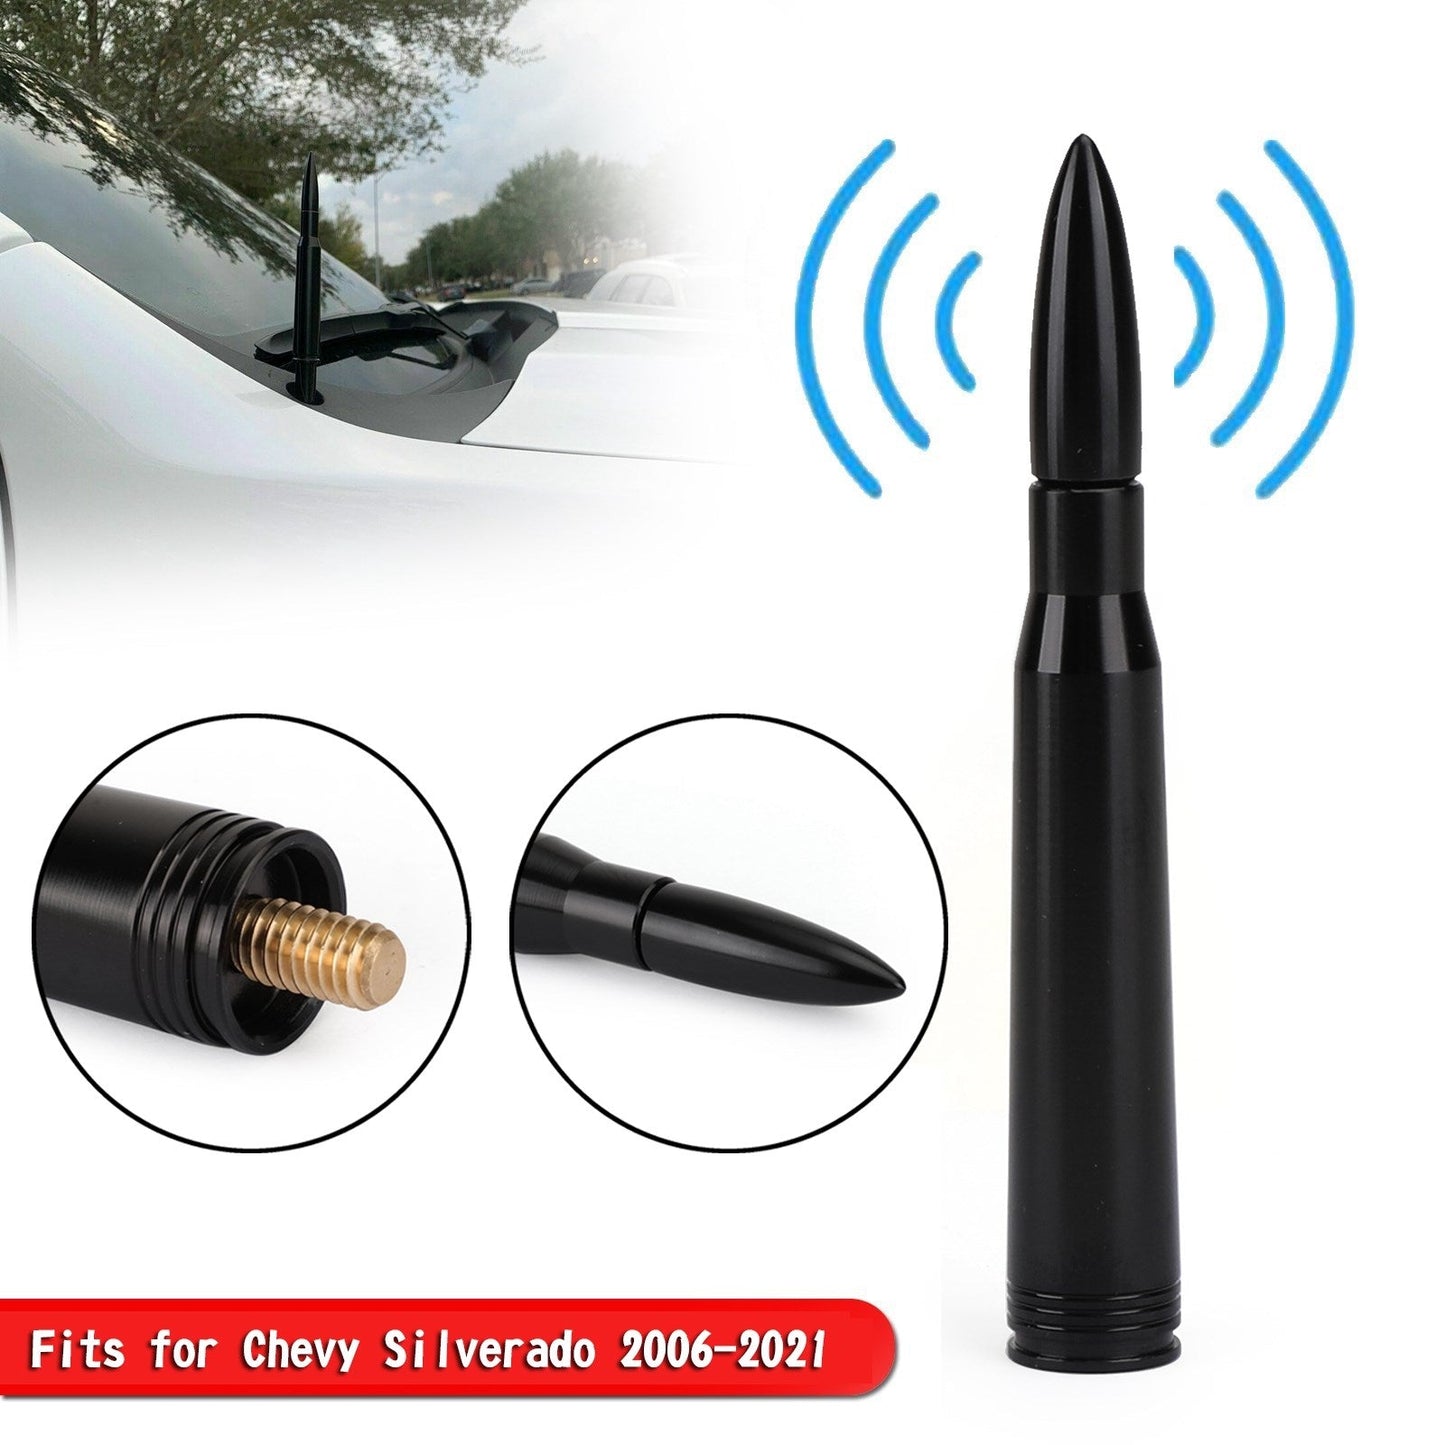 4.25" Aluminium Car Antenna Mast AM/FM For Chevy Silverado 2006-2021